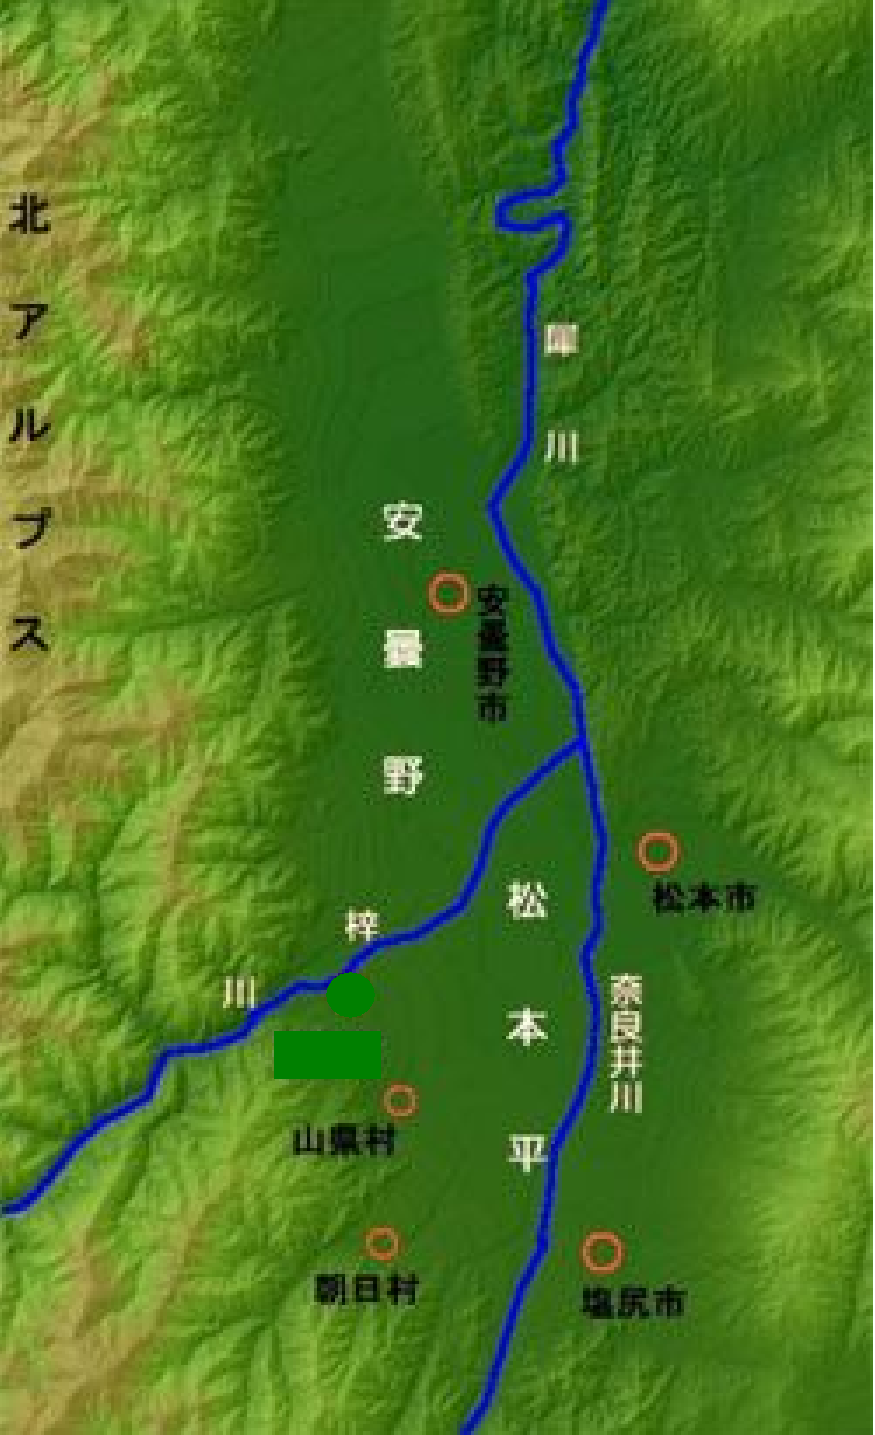 長野県 中信平農業水利事業―水土の礎